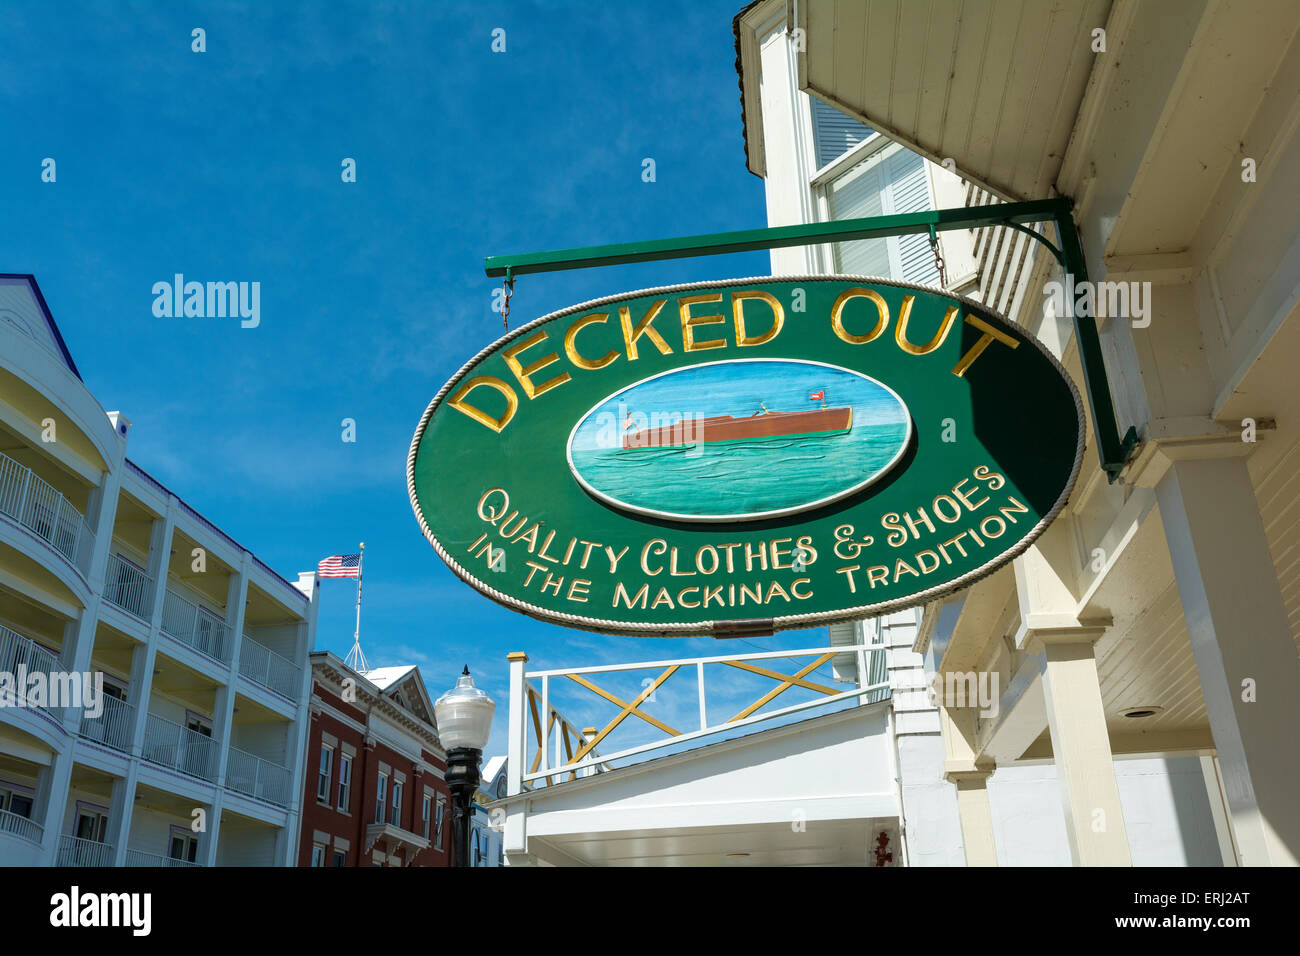 Michigan, isola di Mackinac, Main Street, decked out negozio di abbigliamento segno Foto Stock